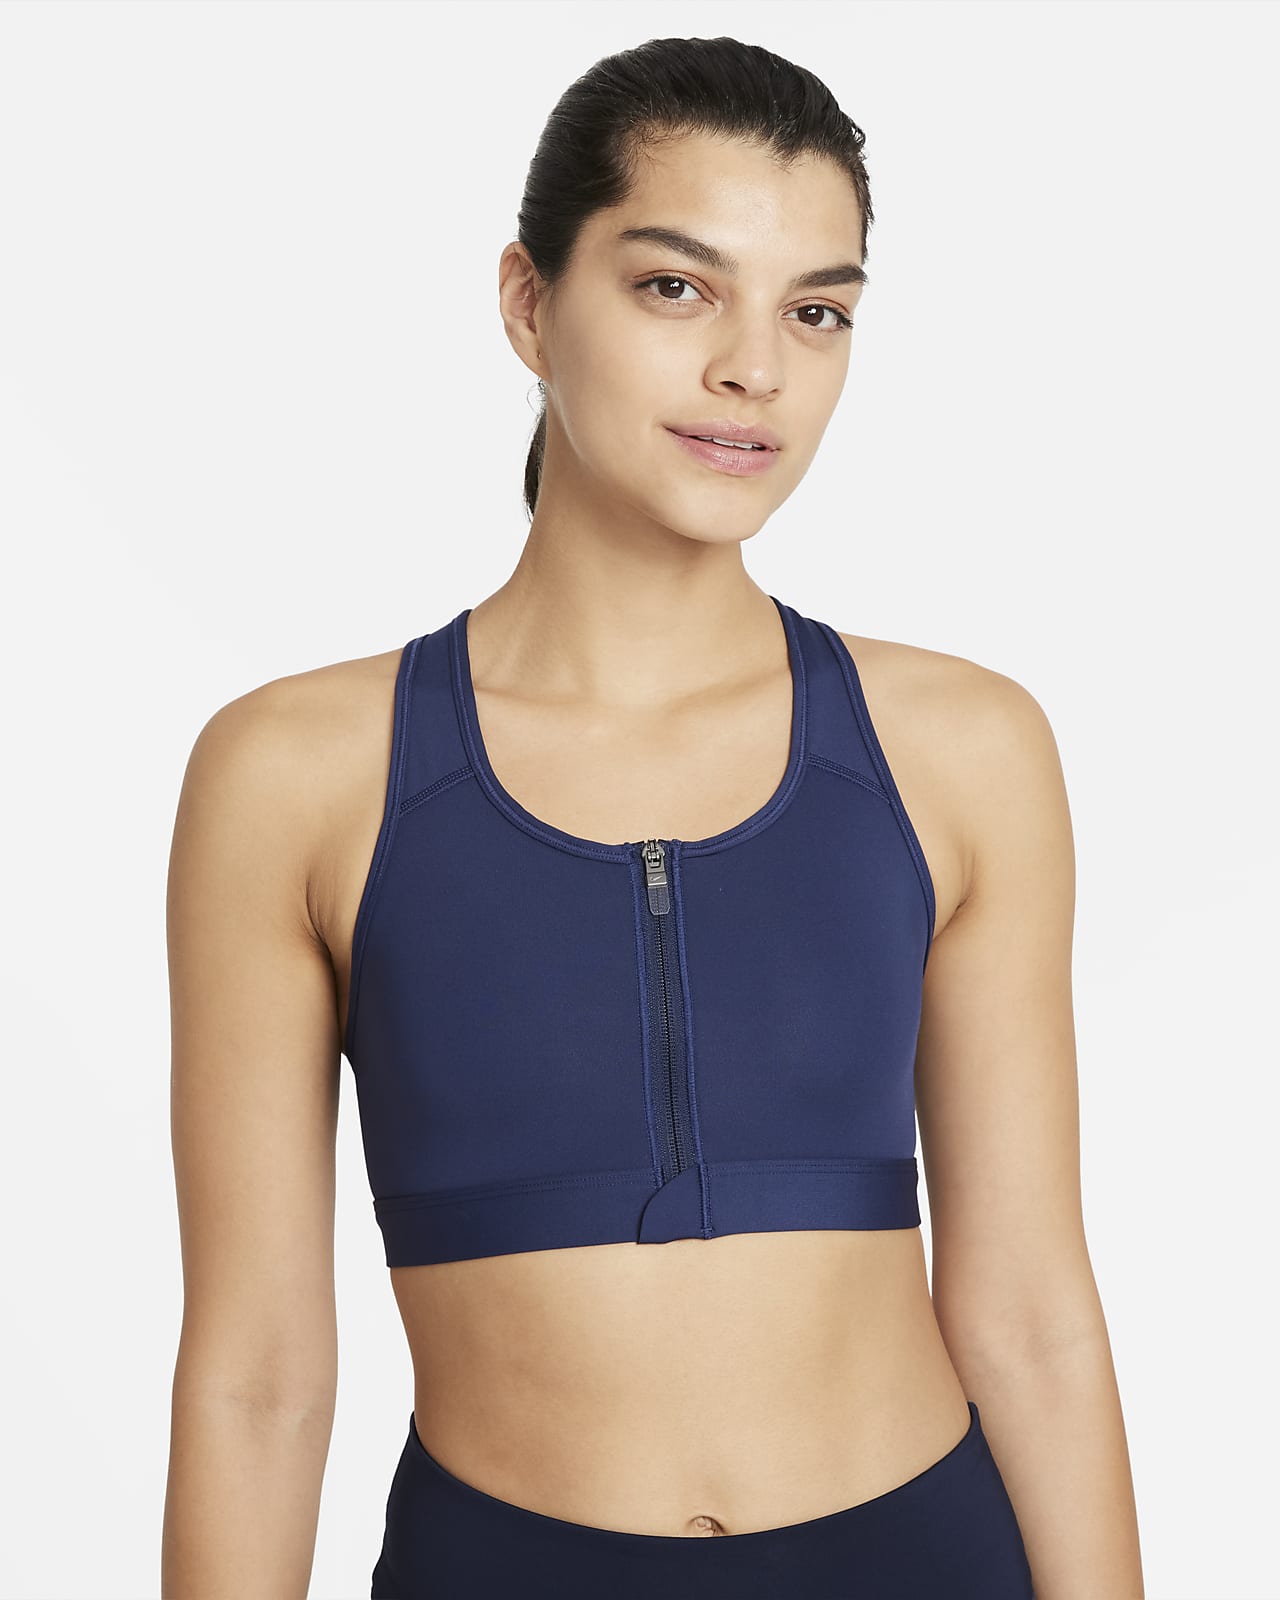 Nike Dri-FIT Swoosh Women's Medium-Support Padded Zip-Front Sports Bra